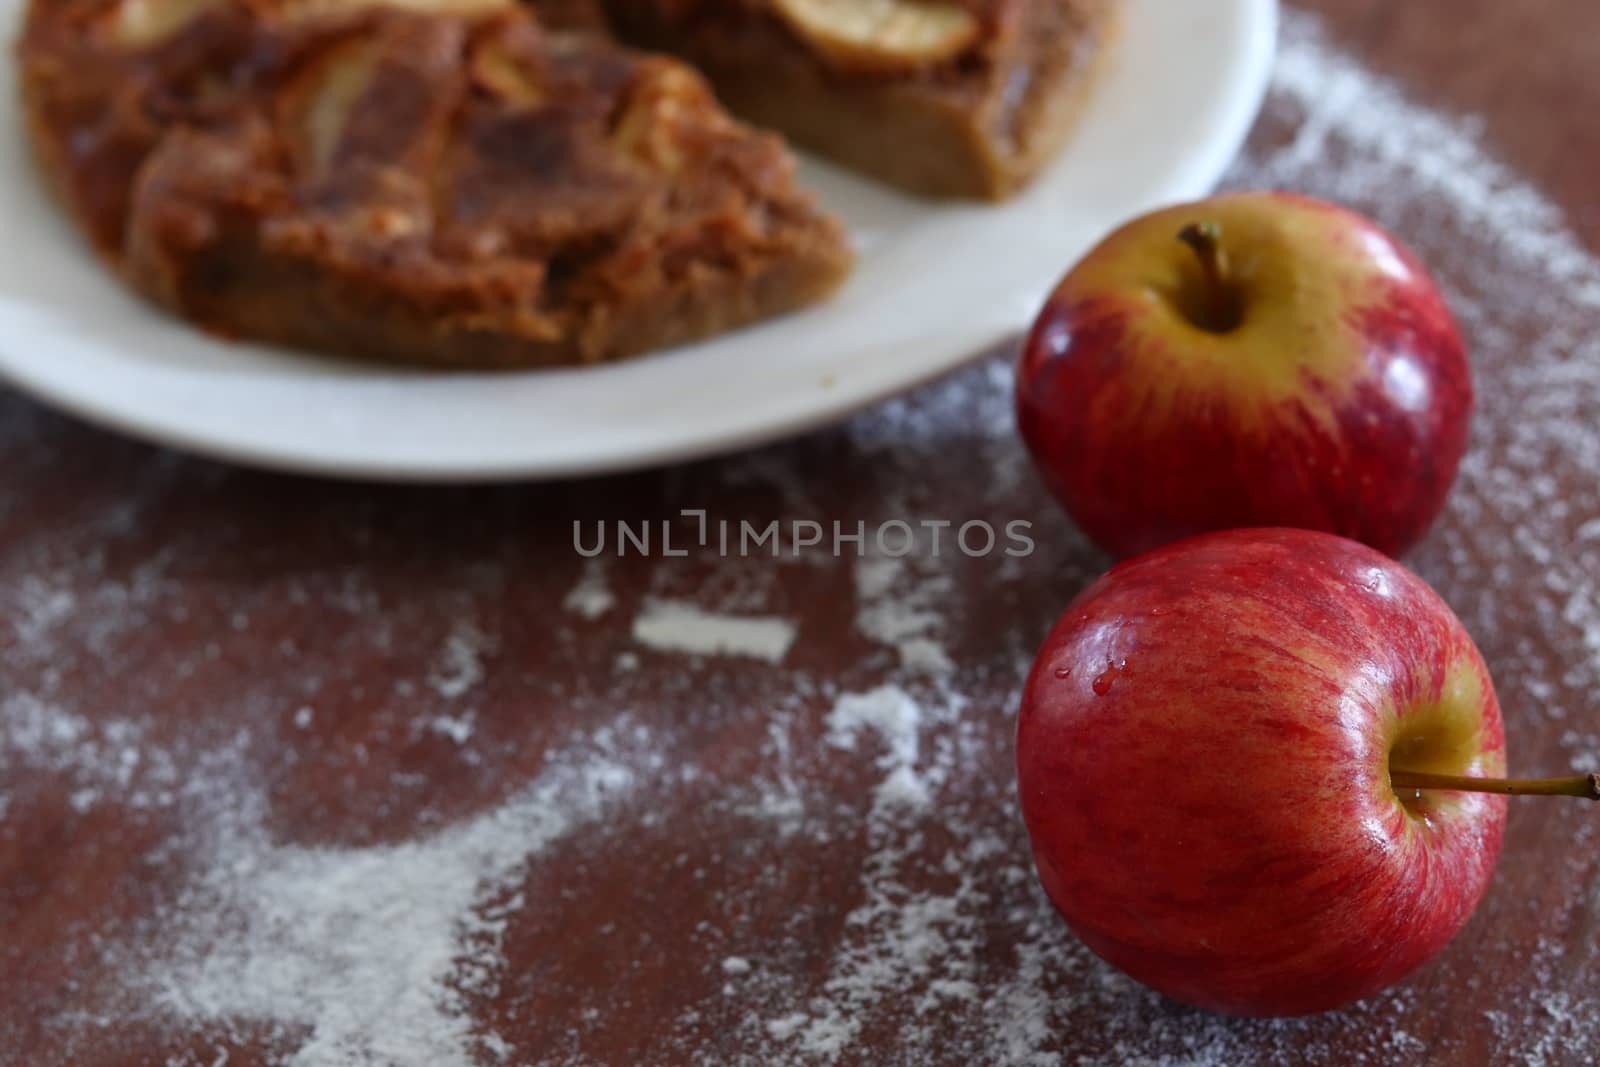 homemade apple cake by Sonnet15